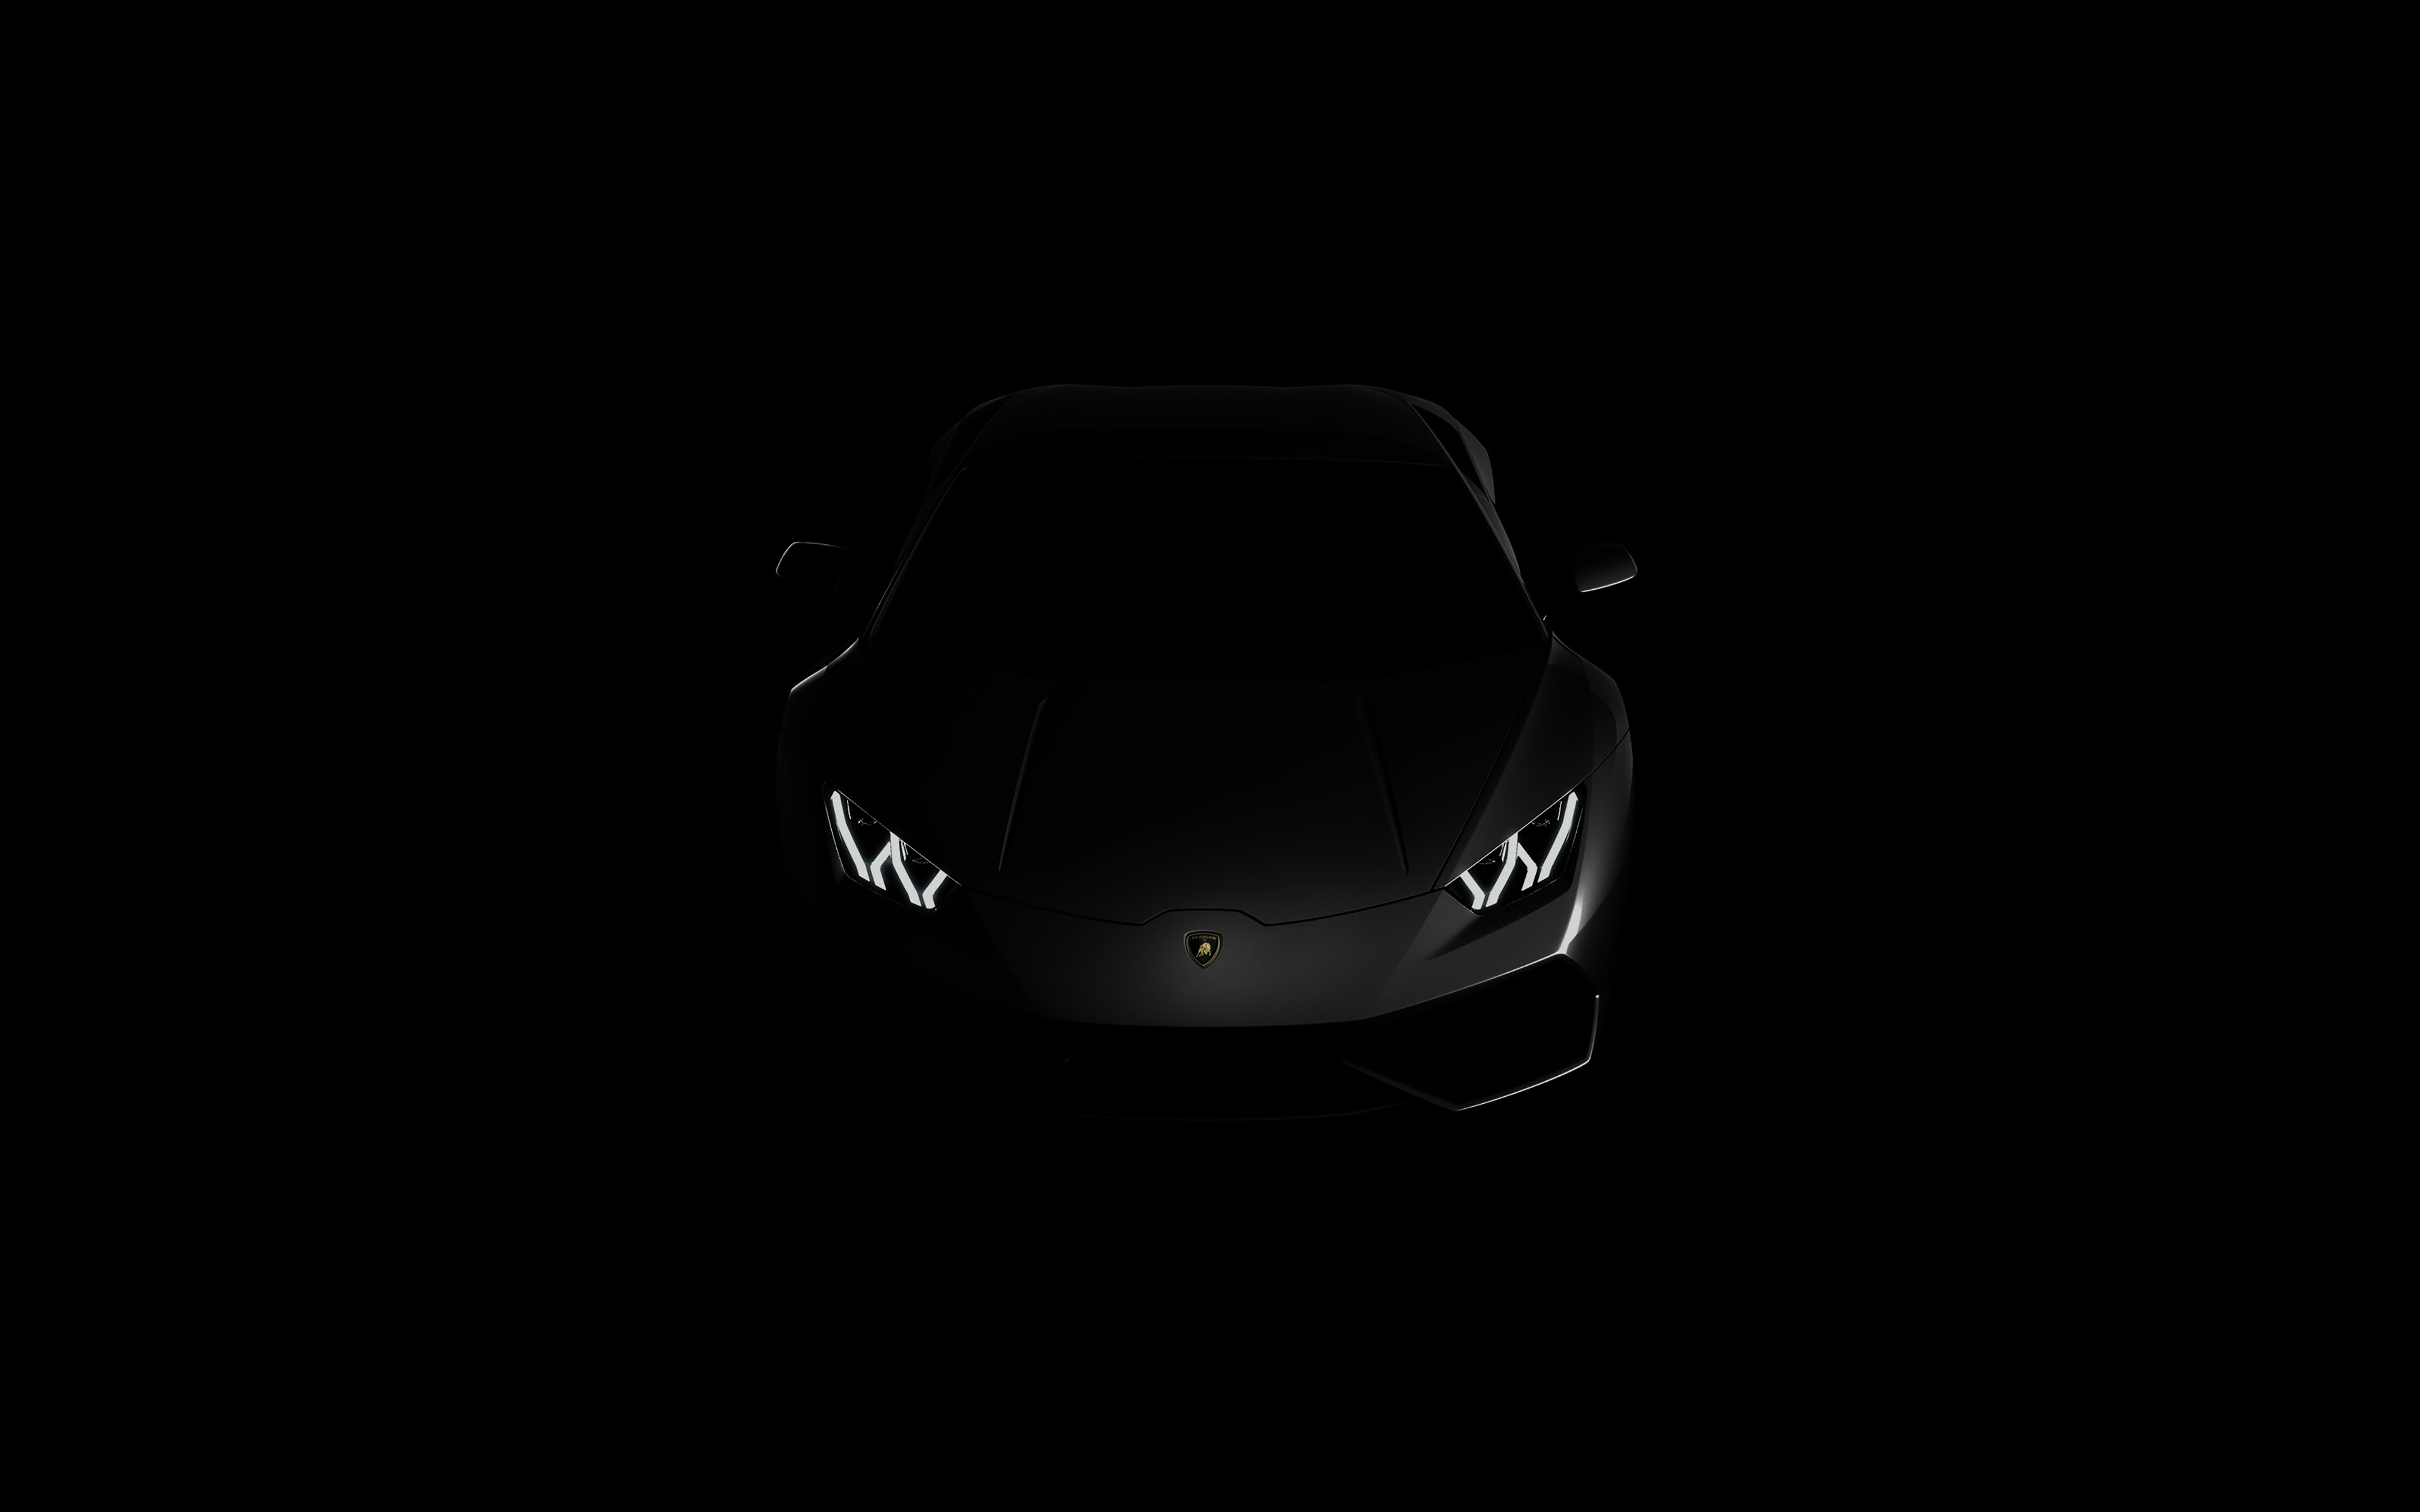 Free download Lamborghini huracan lp black dark 4k wallpaper View HD [3840x2400] for your Desktop, Mobile & Tablet. Explore Black Wallpaper 4KK Seahawks Wallpaper, Space Wallpaper 4K, 4K